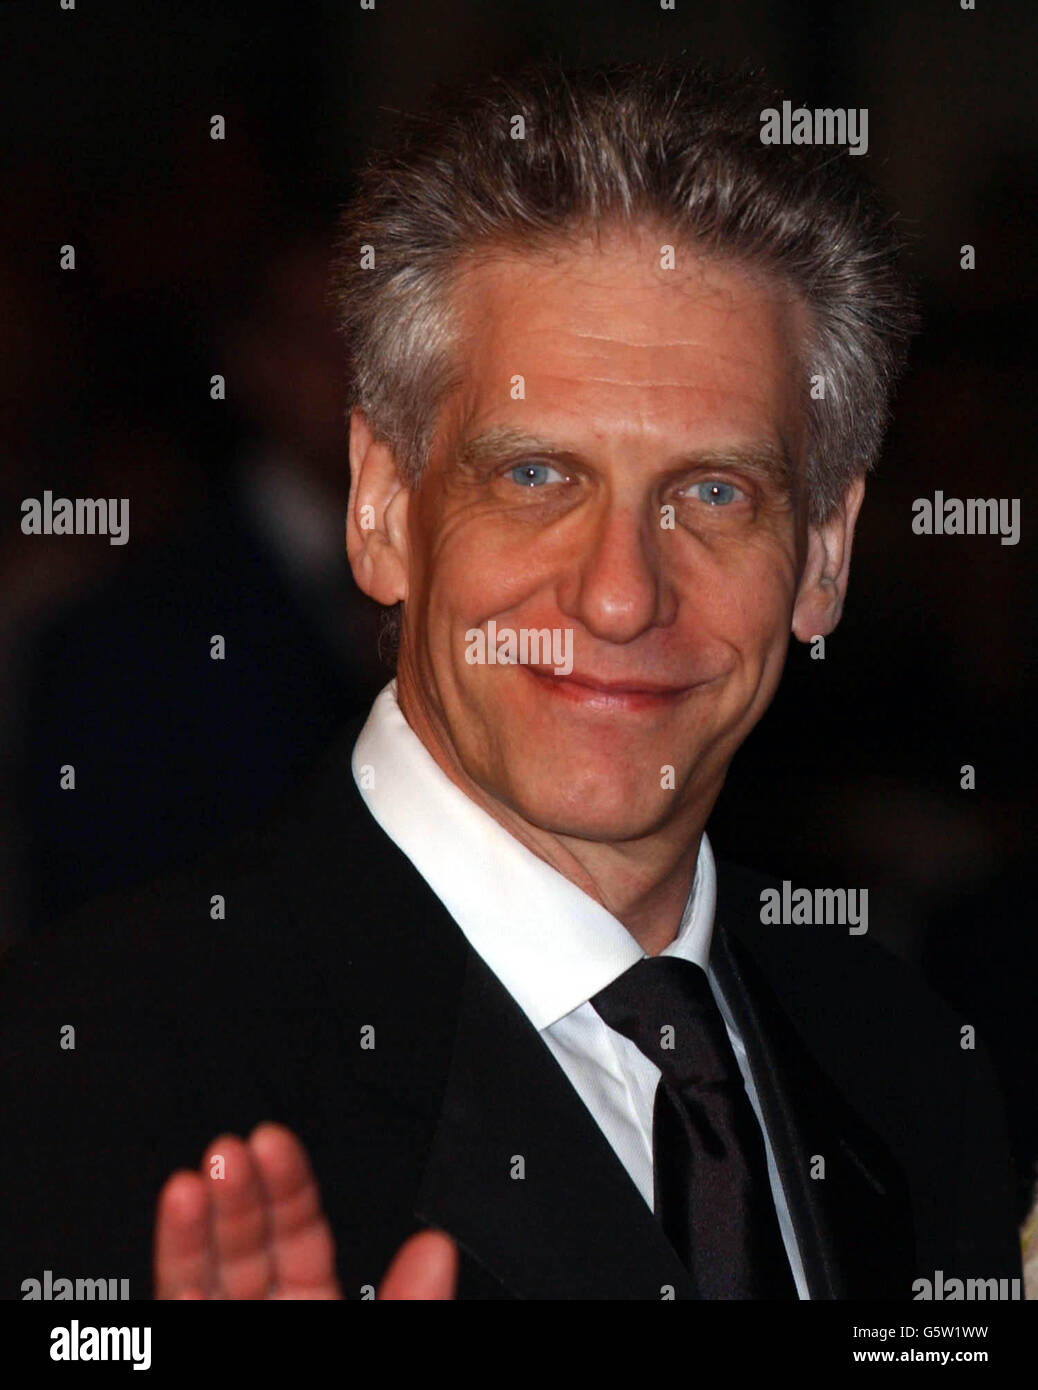 Cannes Spider Cronenberg.Le réalisateur David Cronenberg arrive pour la première de 'Spider', lors du 55e Festival de Cannes. Banque D'Images